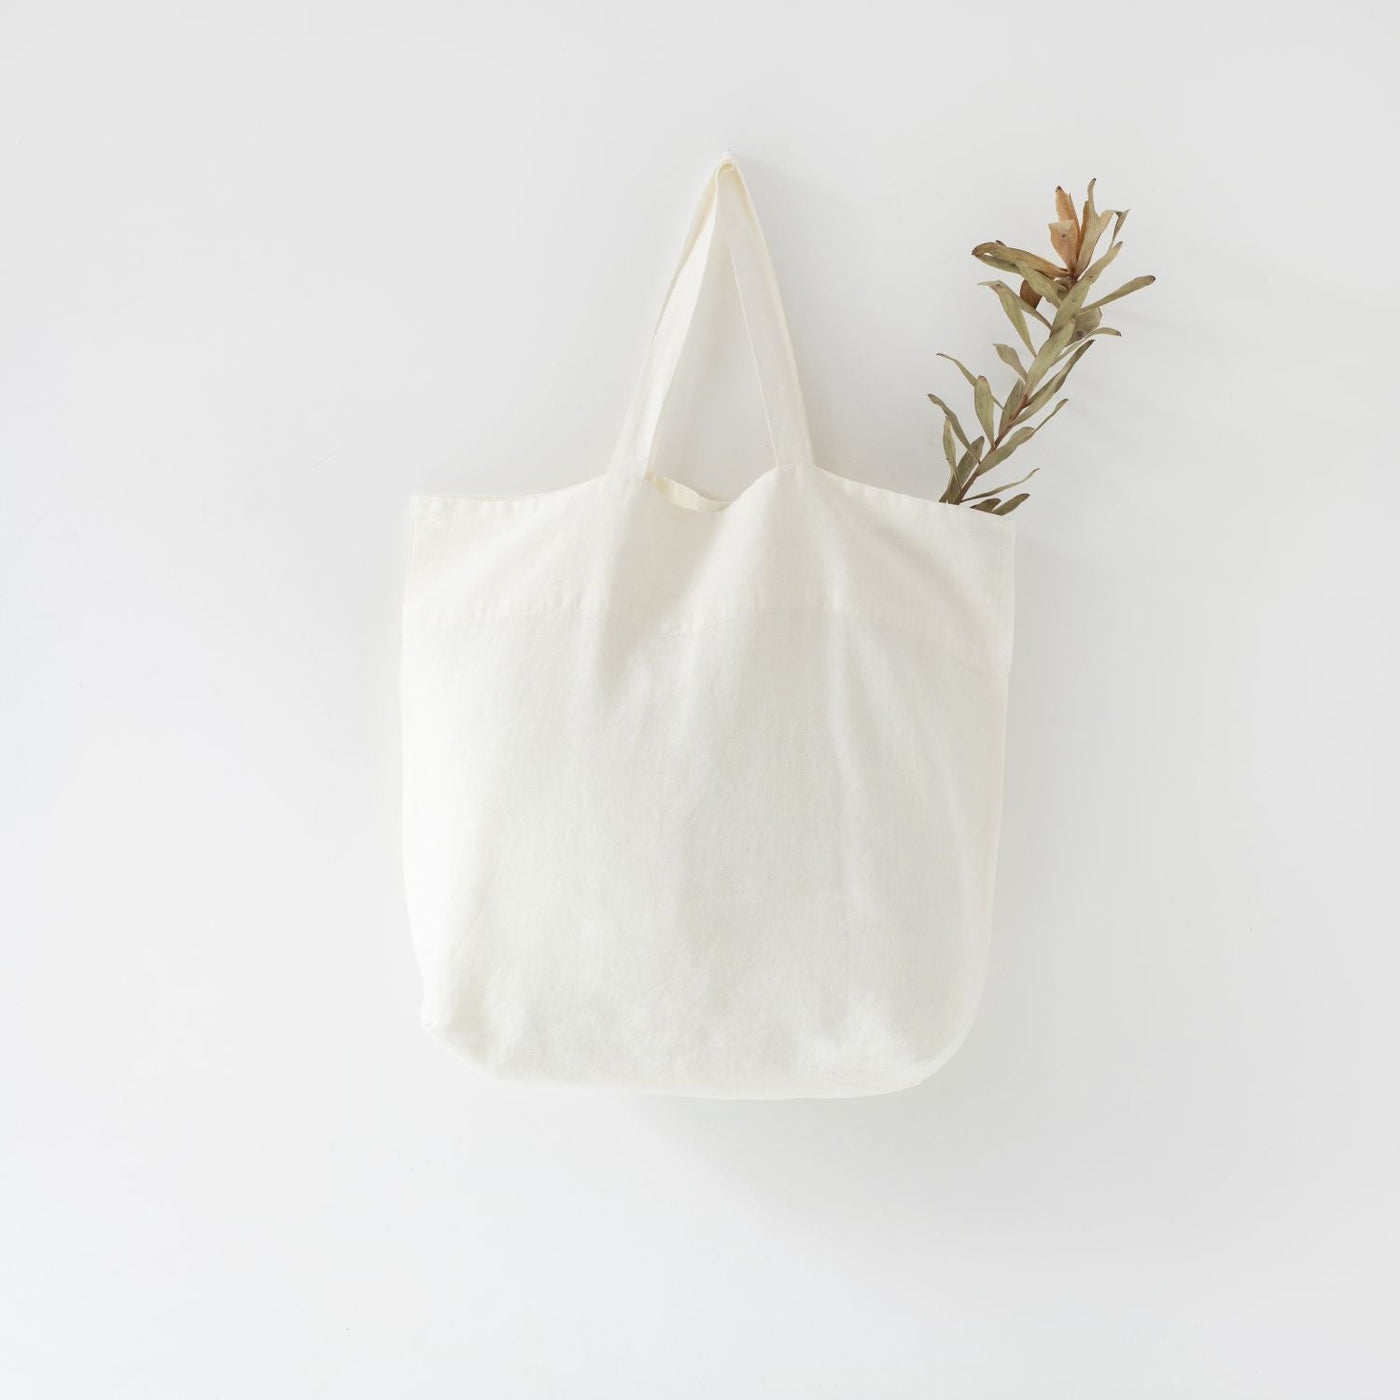 White Large Linen Bag